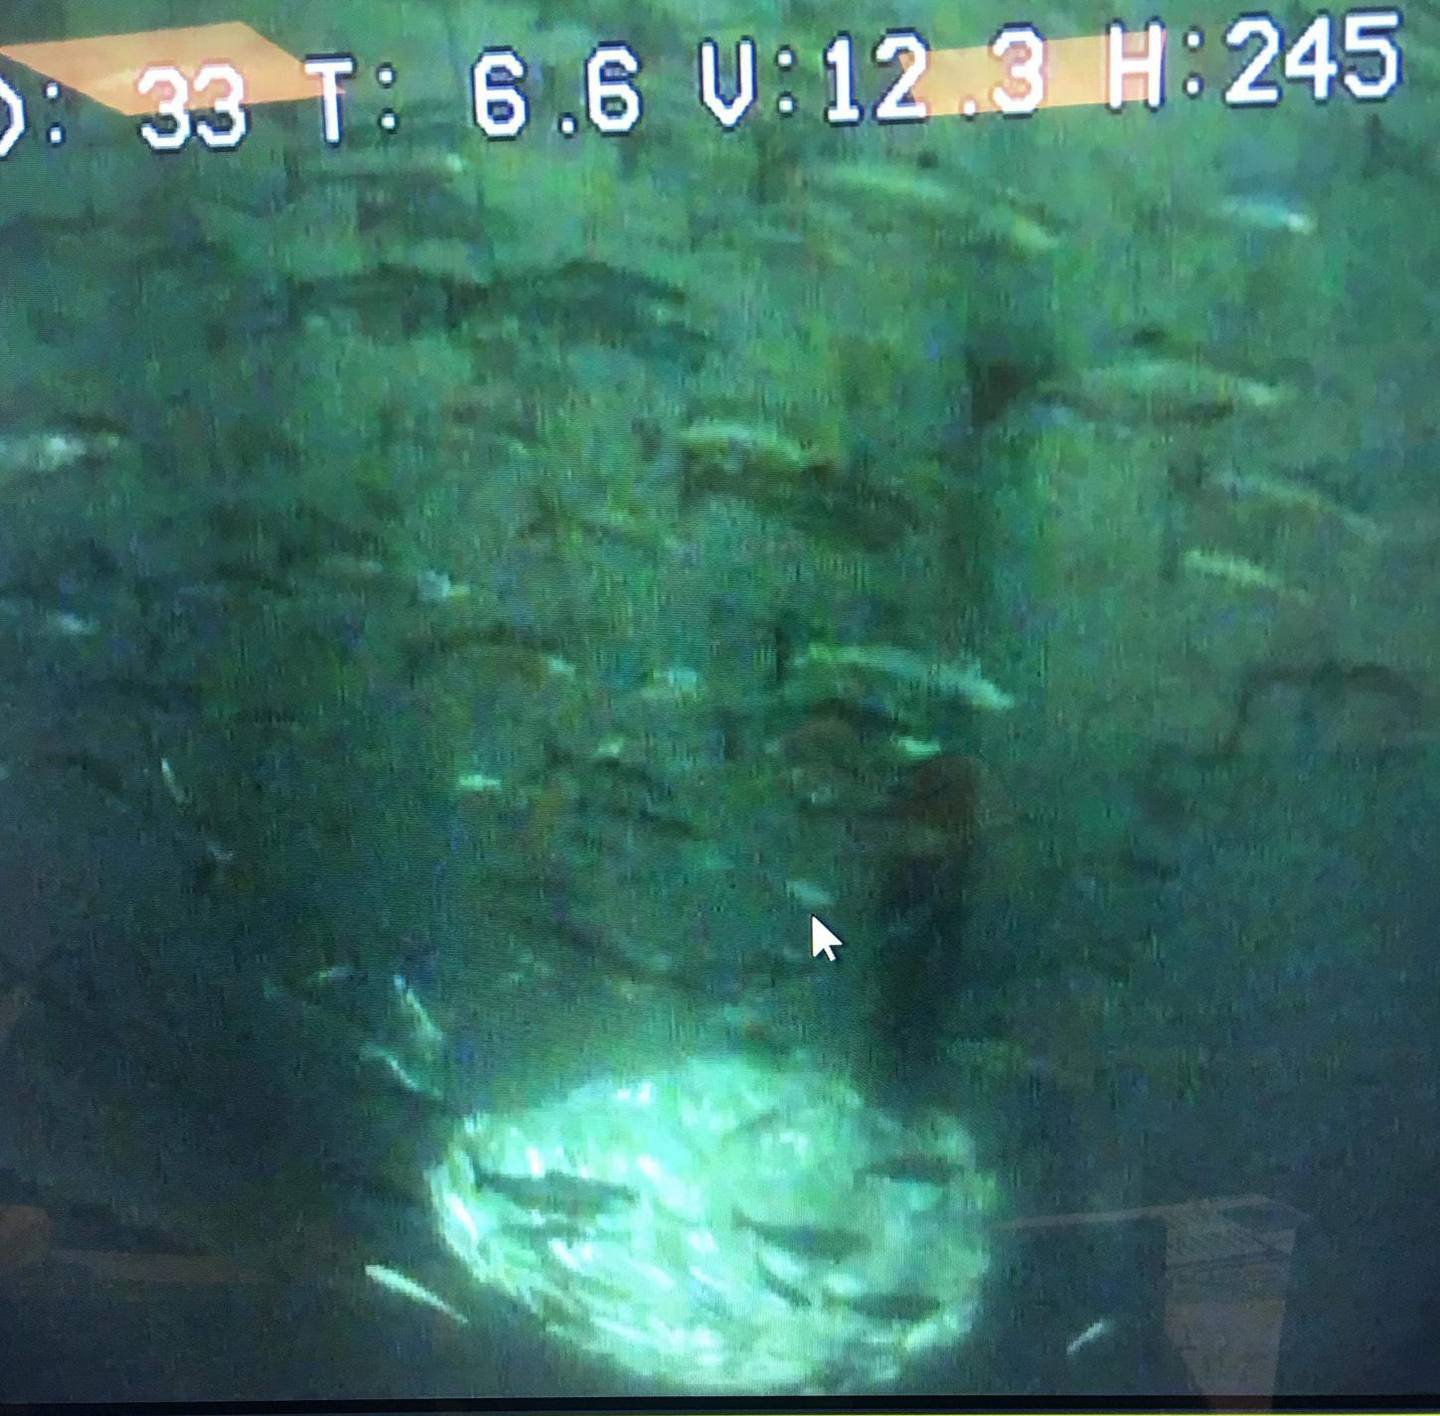 Rotvik  20190527.
Bilde tatt av overvåkingskamera hos Salaks AS i det vannet i en merd farges grønt av algene Chrysochromulina leadbeateri. 
Foto: Salaks AS / NTB scanpix